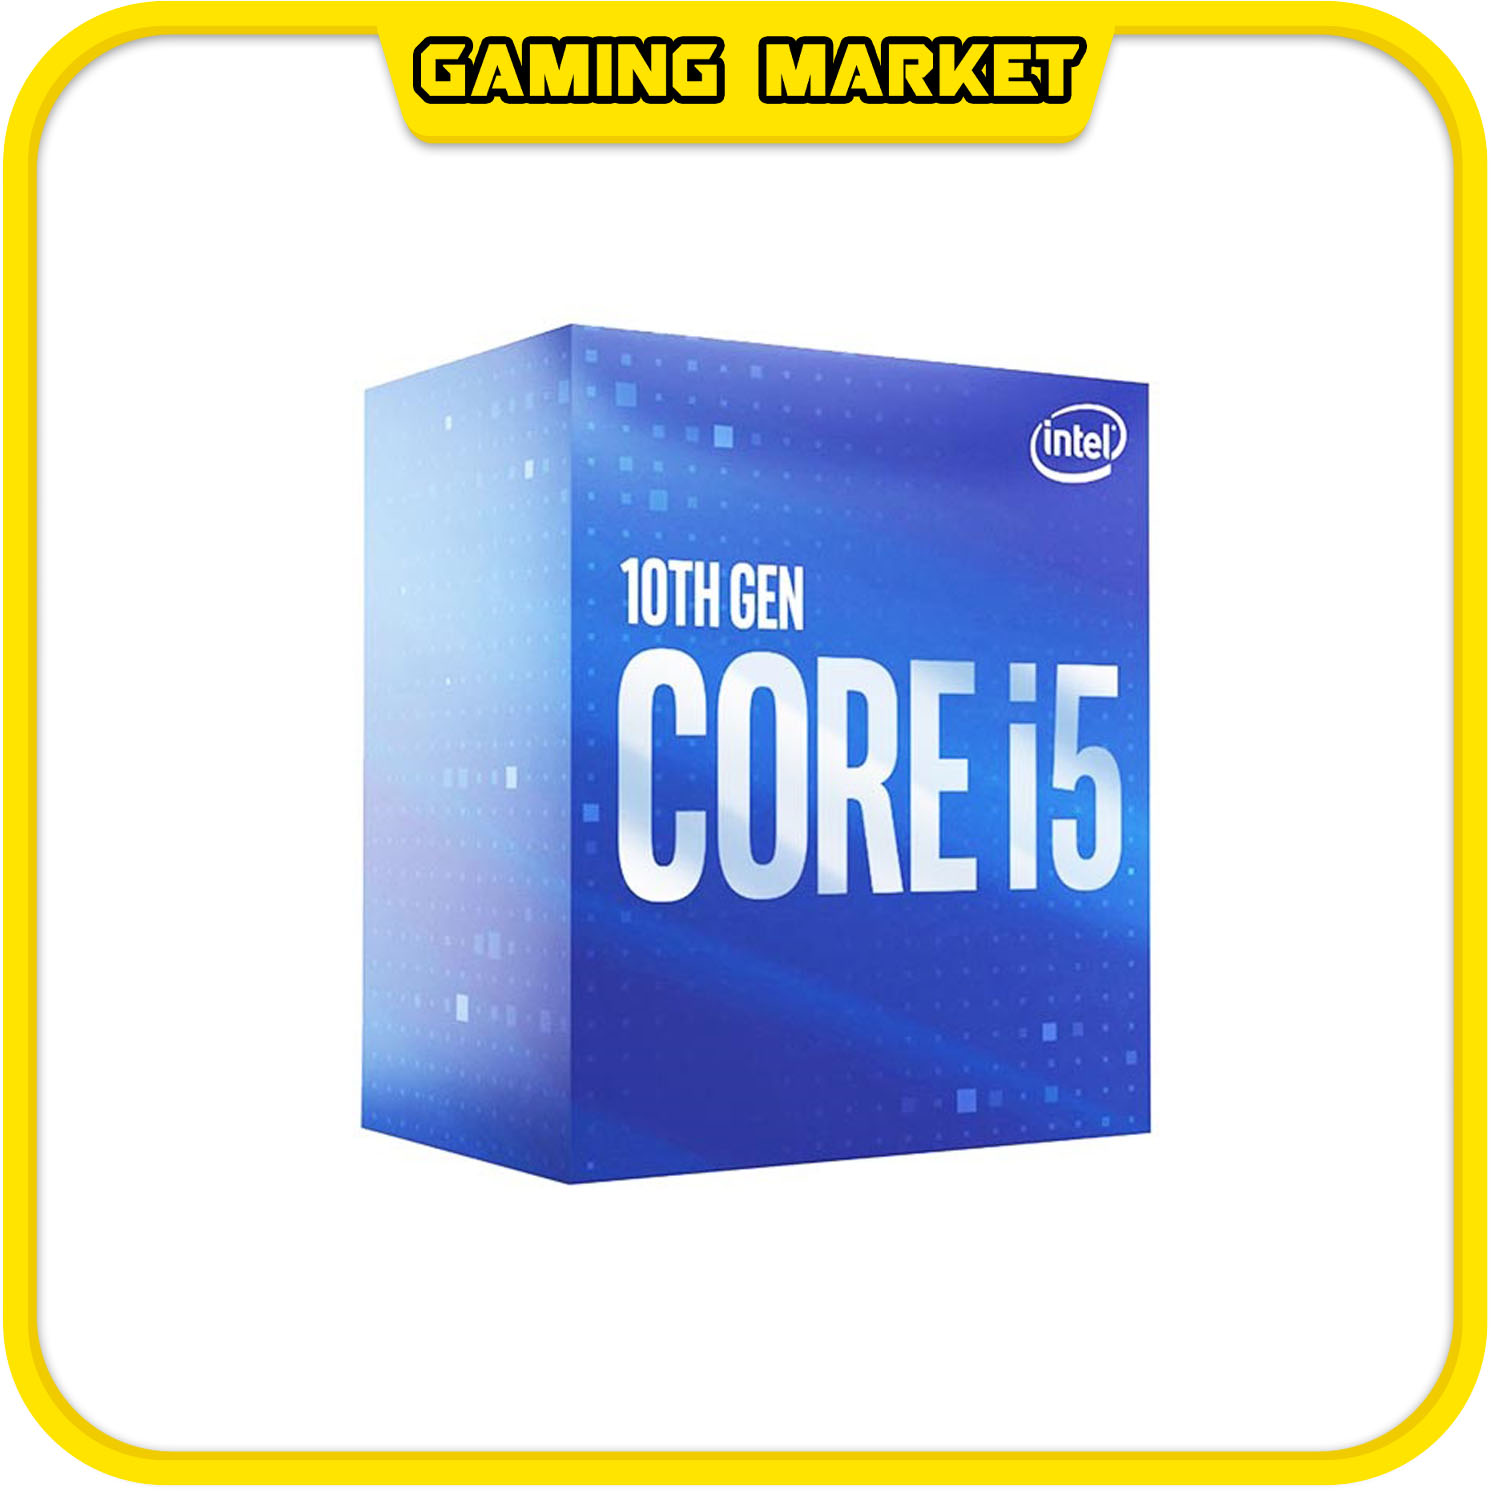 PC CHƠI GAME, ĐỒ HOẠ I5 10400F/RAM 16G DDR4/VGA 1660 6G SUPER